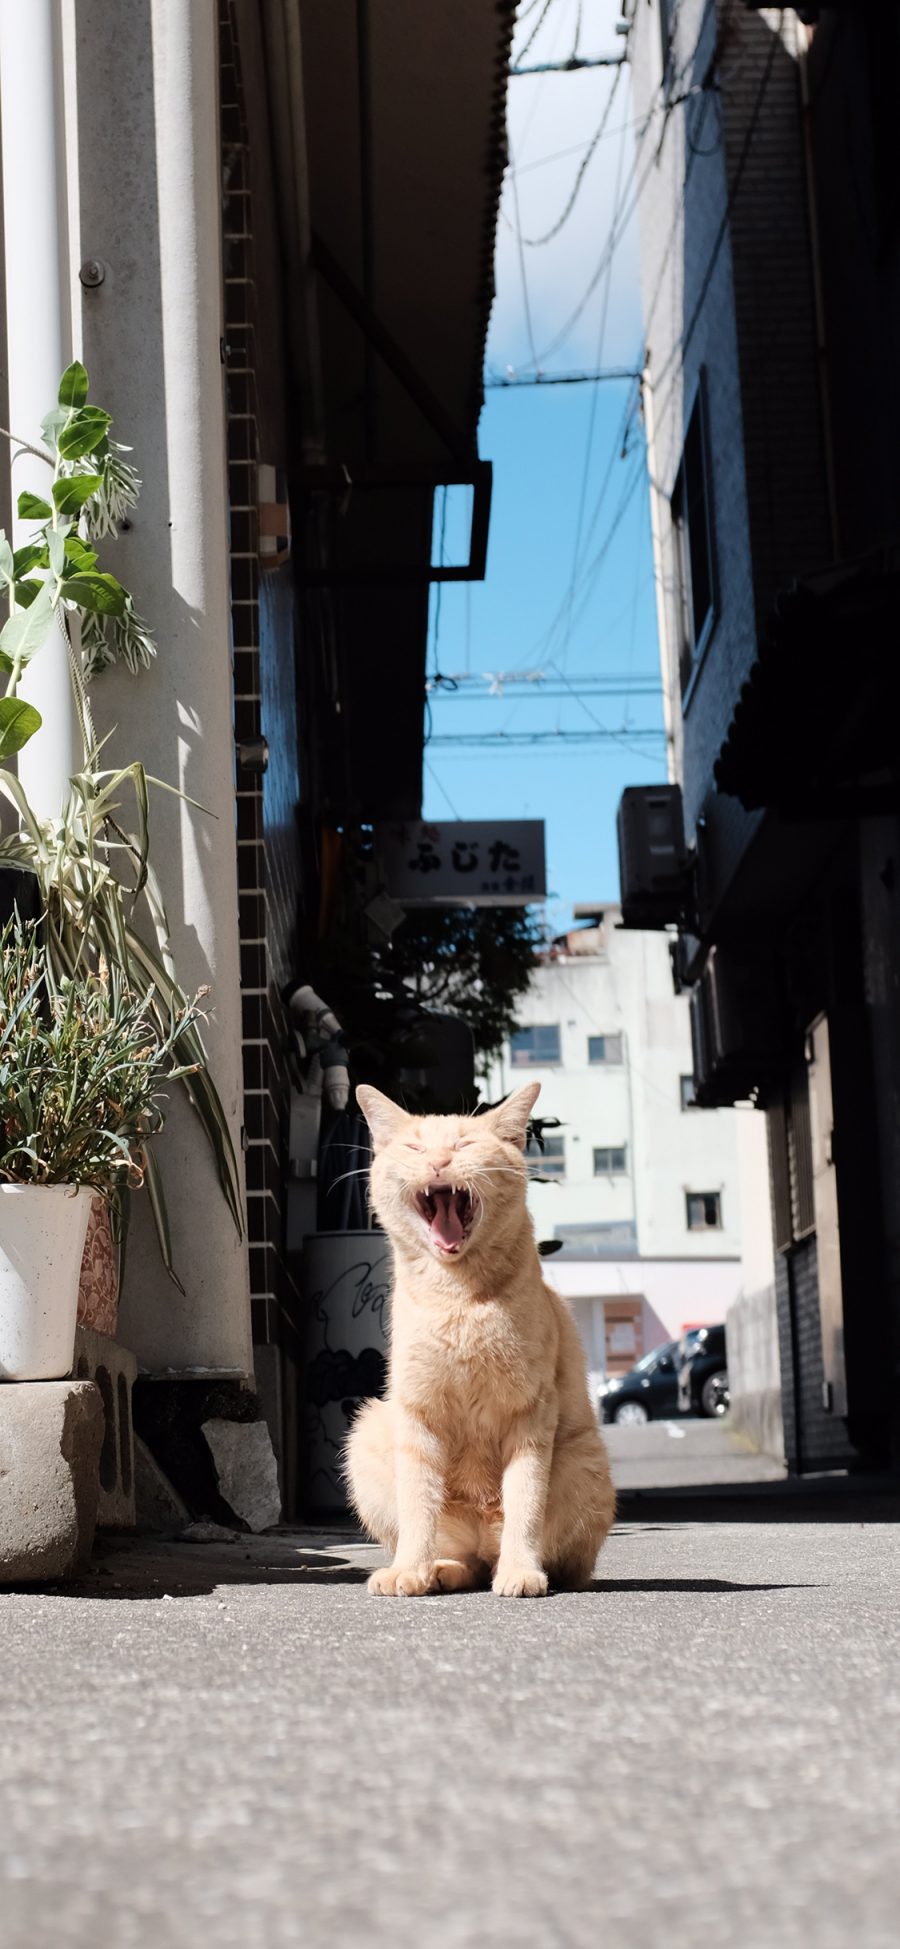 [2436×1125]猫咪 宠物 黄毛 橘猫 街道 苹果手机壁纸图片